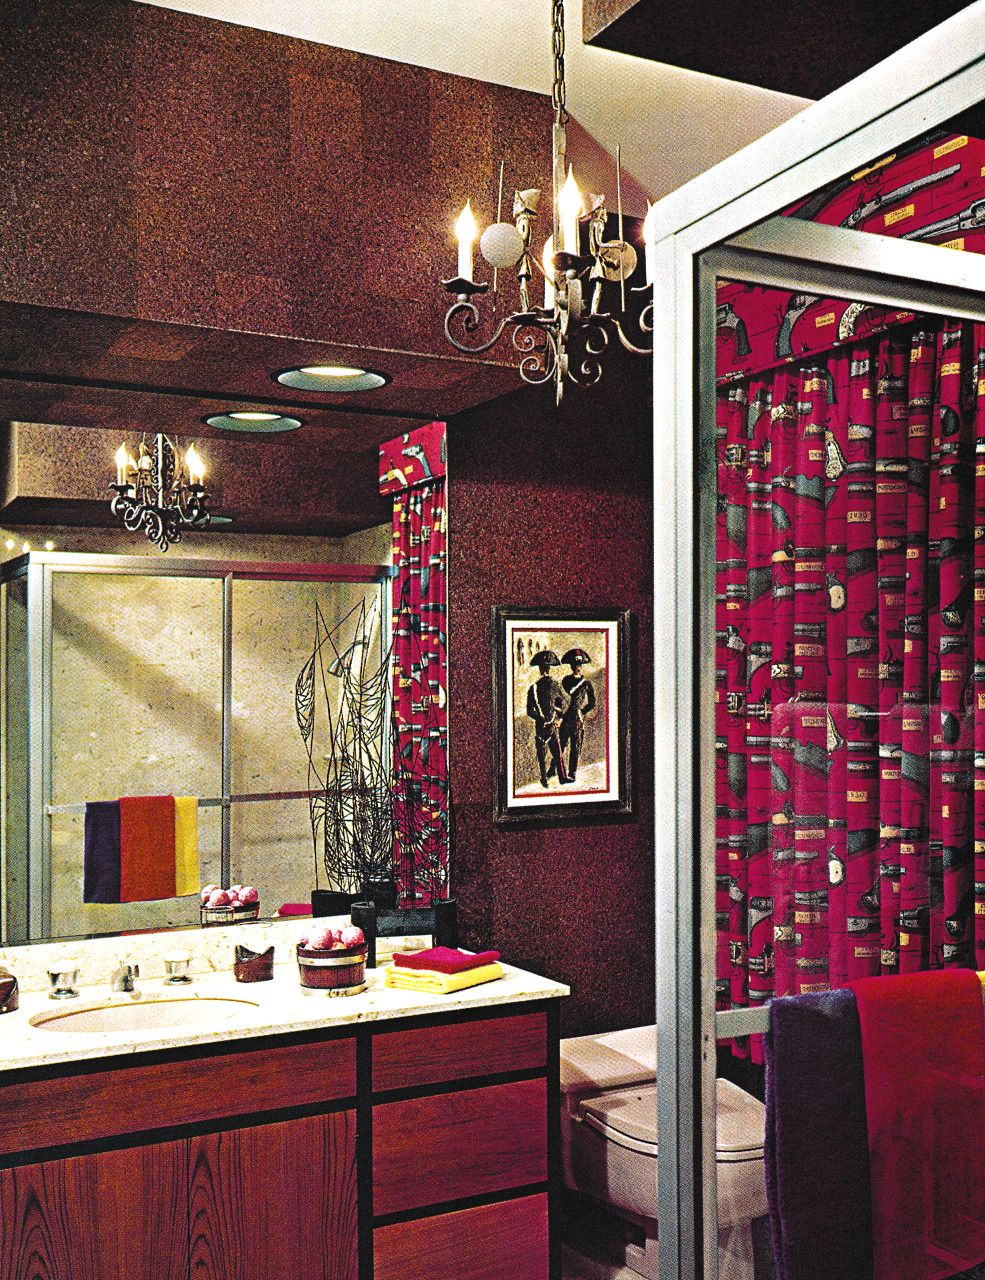 Bathroom Design and Decor, 1969 The Giki Tiki Retro home decor, 70s